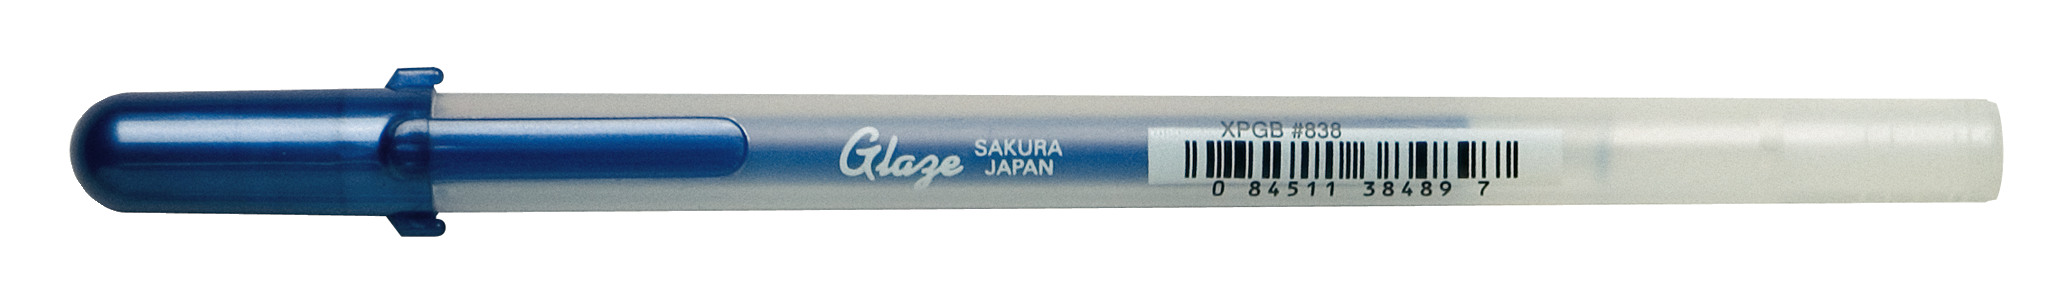 SAKURA Gelly Roll 0.7mm XPGB838 Glaze Royal Blue